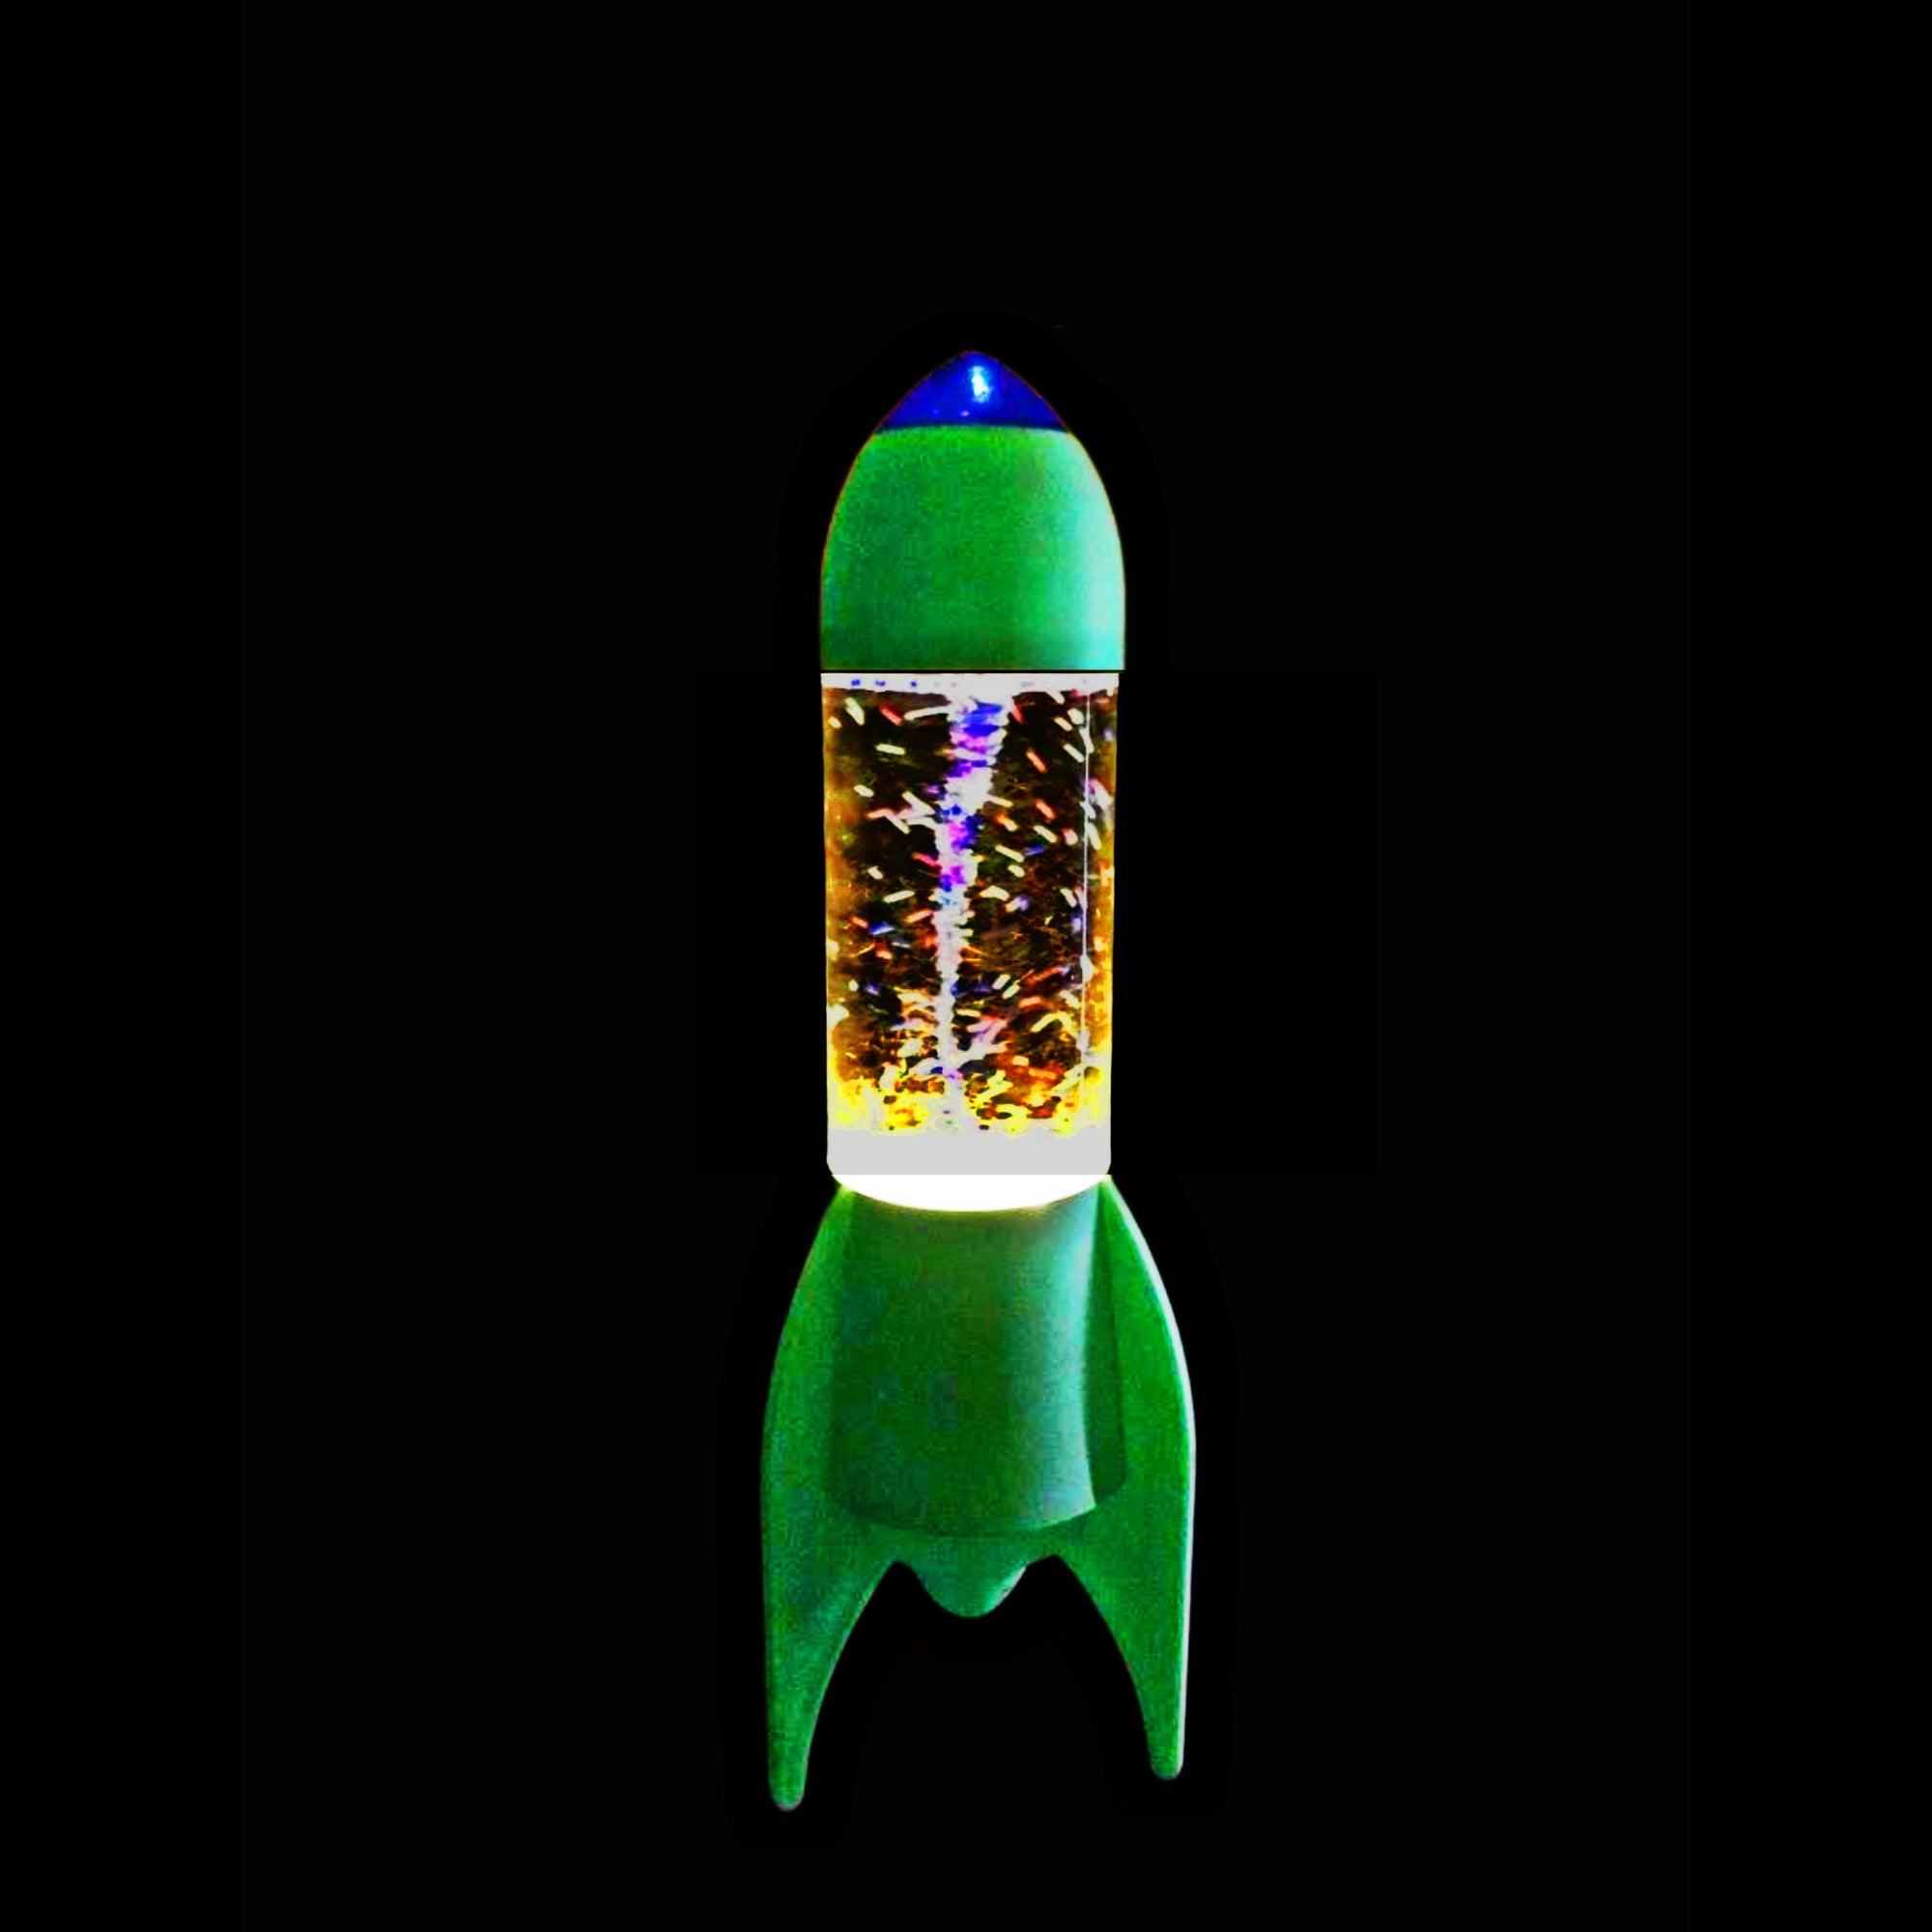 Kenart/Lyon Rocket Tornado Lamp